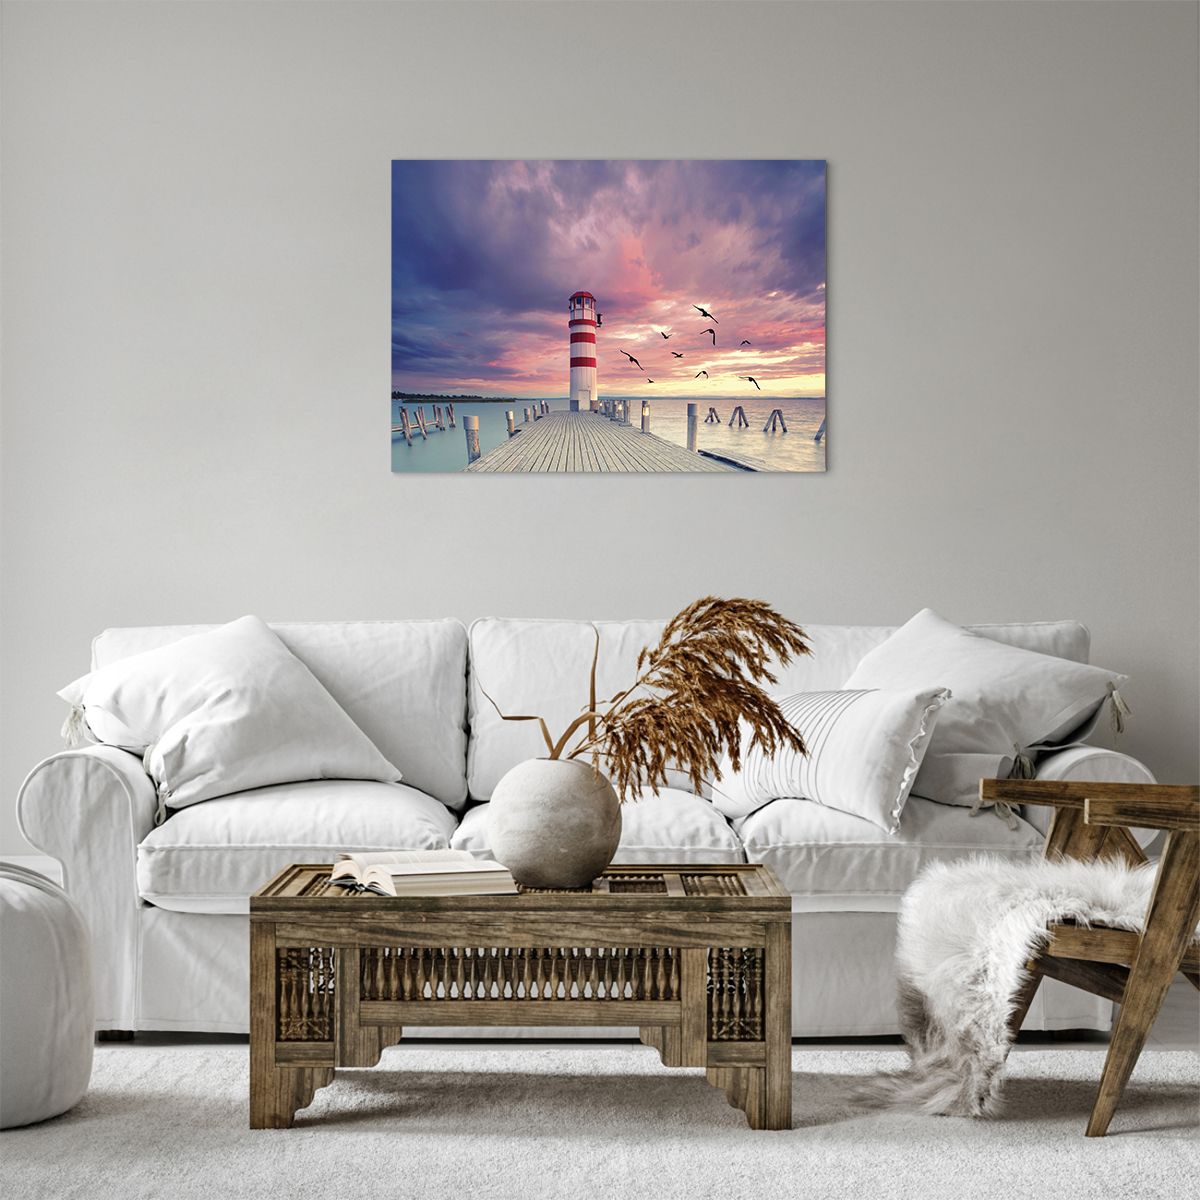 Bild auf Leinwand Leuchtturm, Bild auf Leinwand Landschaft, Bild auf Leinwand Meer, Bild auf Leinwand Holzsteg, Bild auf Leinwand Wolken